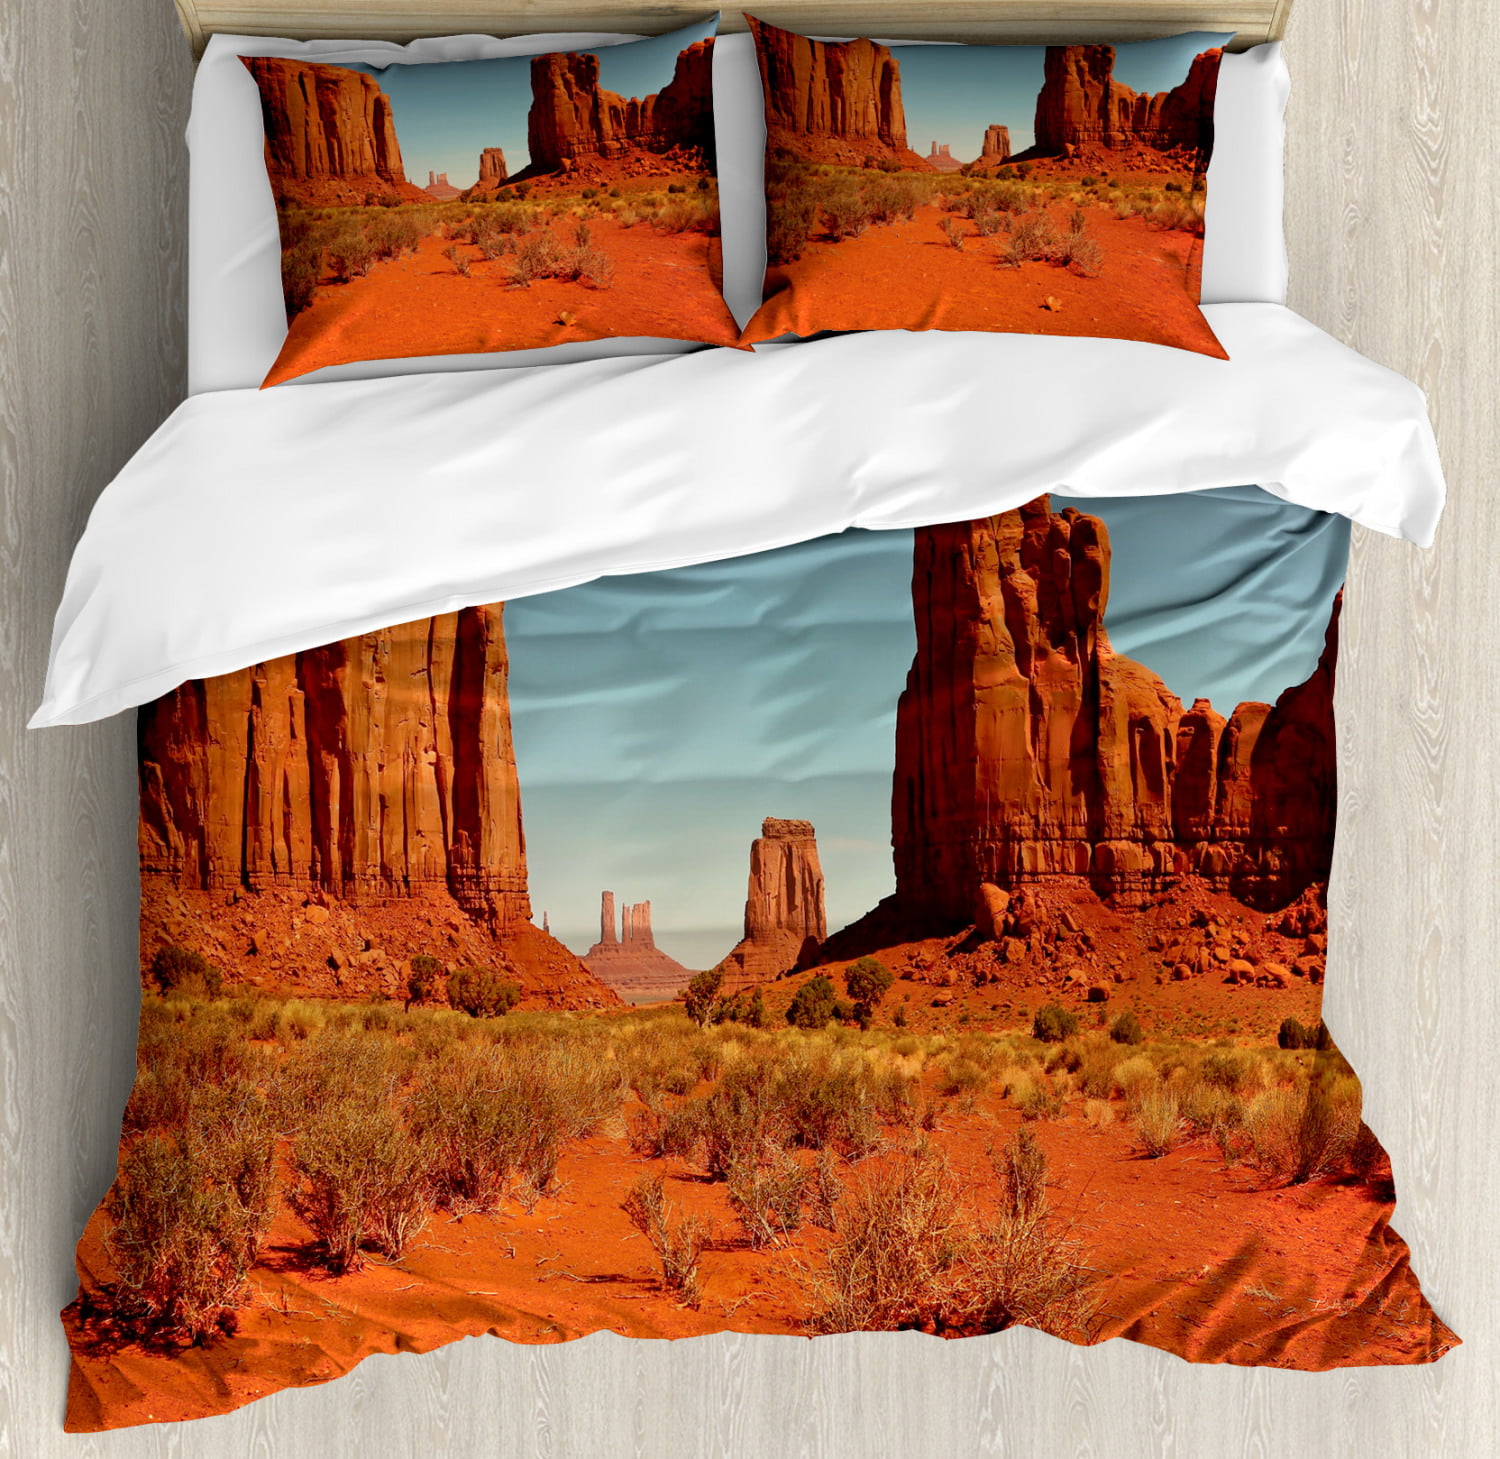 Desert Queen Size Duvet Cover Set, Navajo Print Duvet Cover